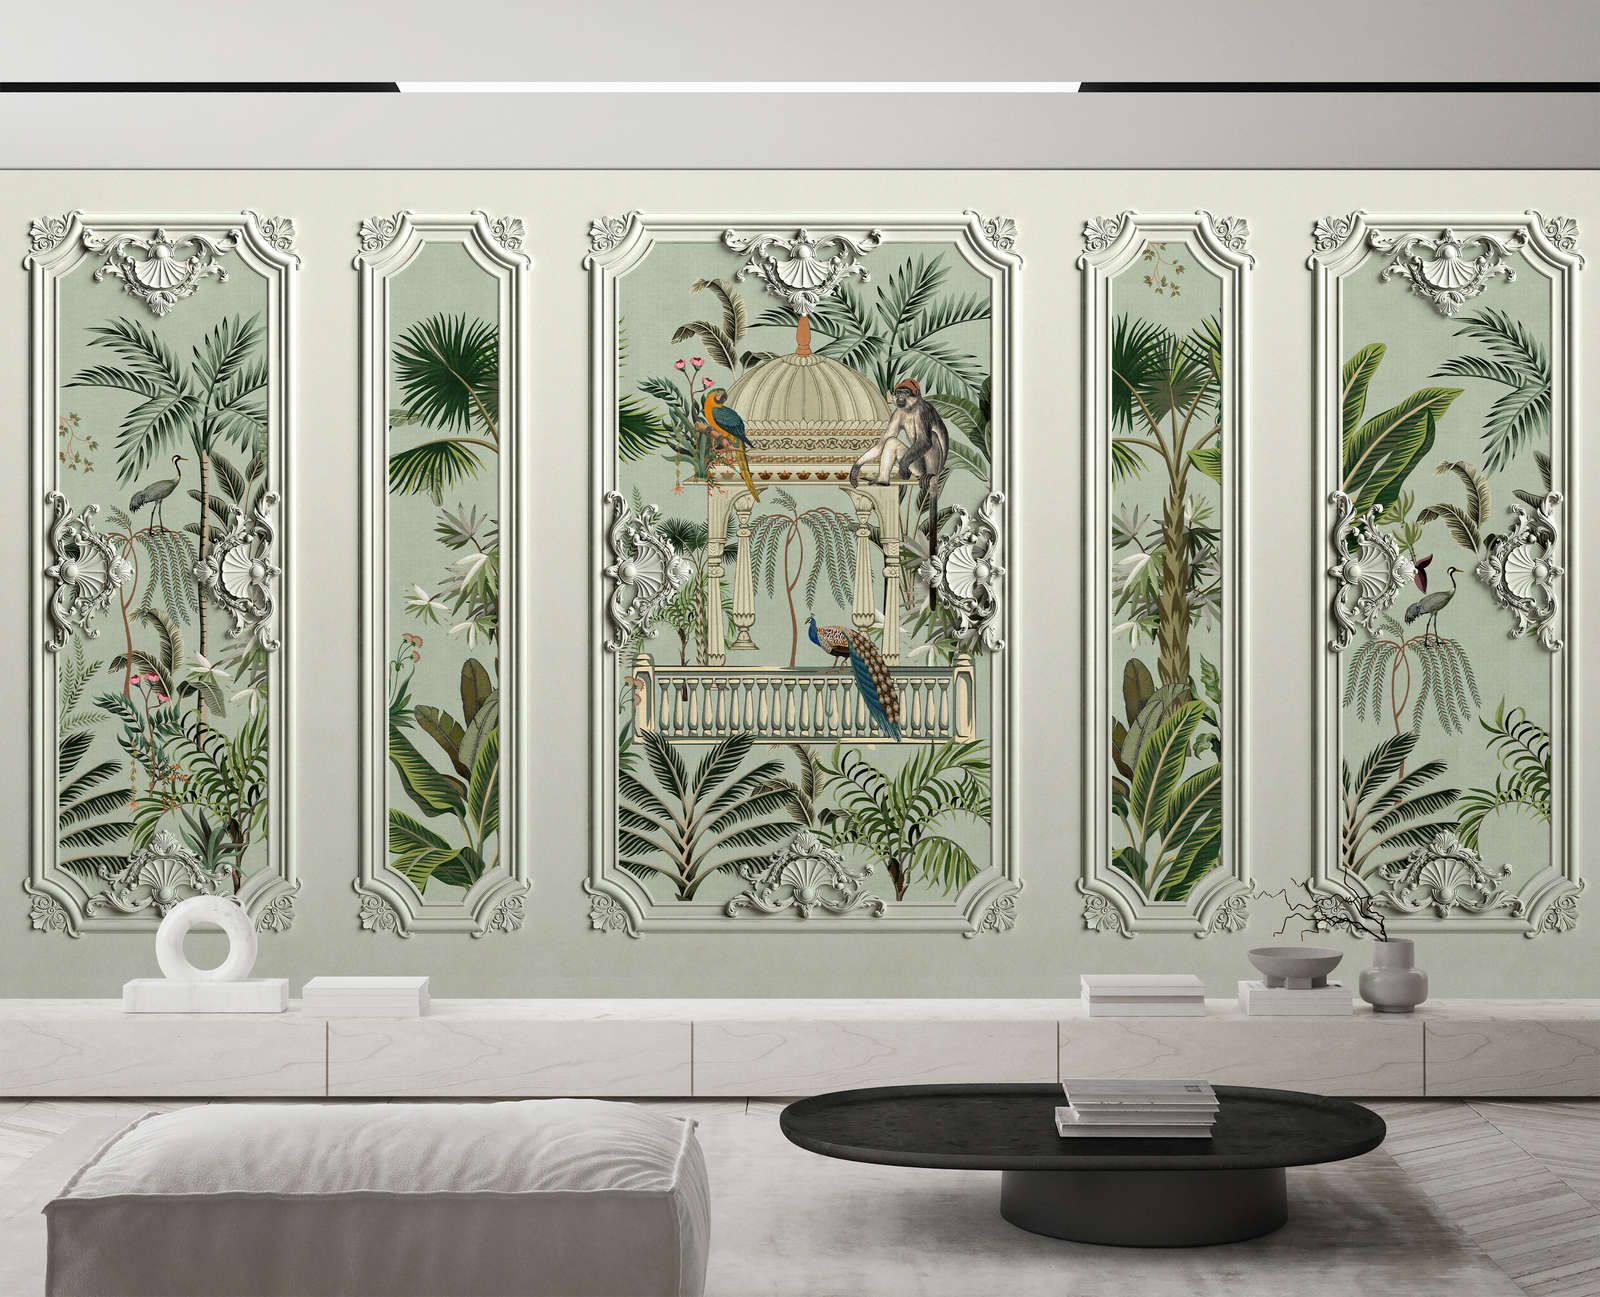             papier peint en papier panoramique »darjeeling« - aspect cadre stucco avec oiseaux & palmiers avec structure en lin en arrière-plan - intissé premium lisse et légèrement brillant
        